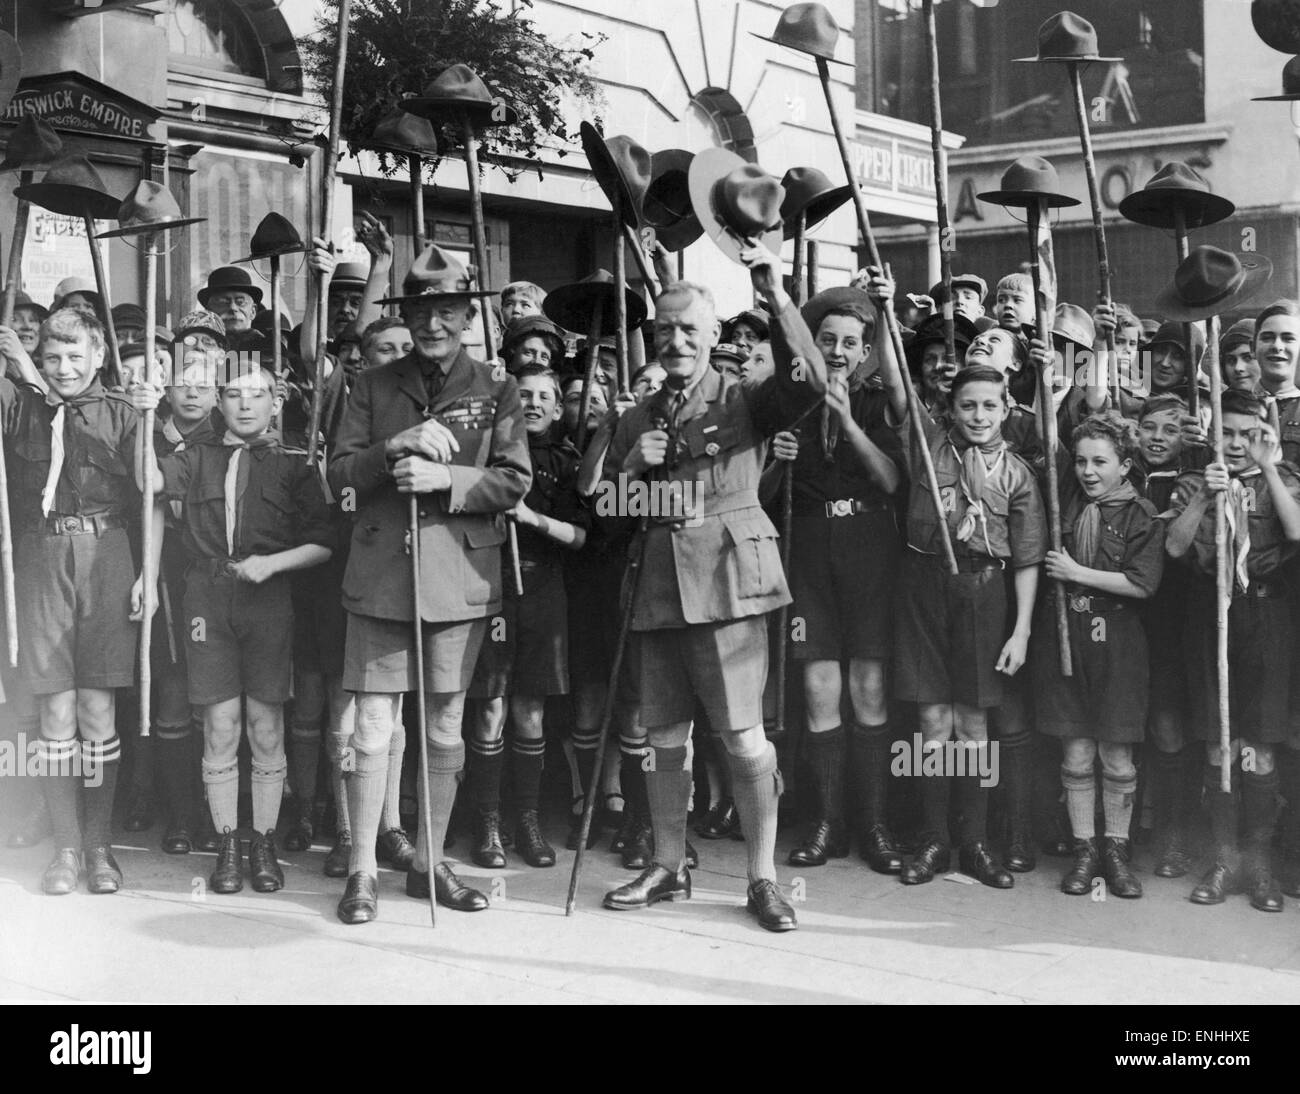 Lord Robert Baden-Powell, fondatore del Movimento Scout, inspoecting un folto gruppo di boy scout al di fuori di Chiswick Empire Theatre, circa 1920. Foto Stock